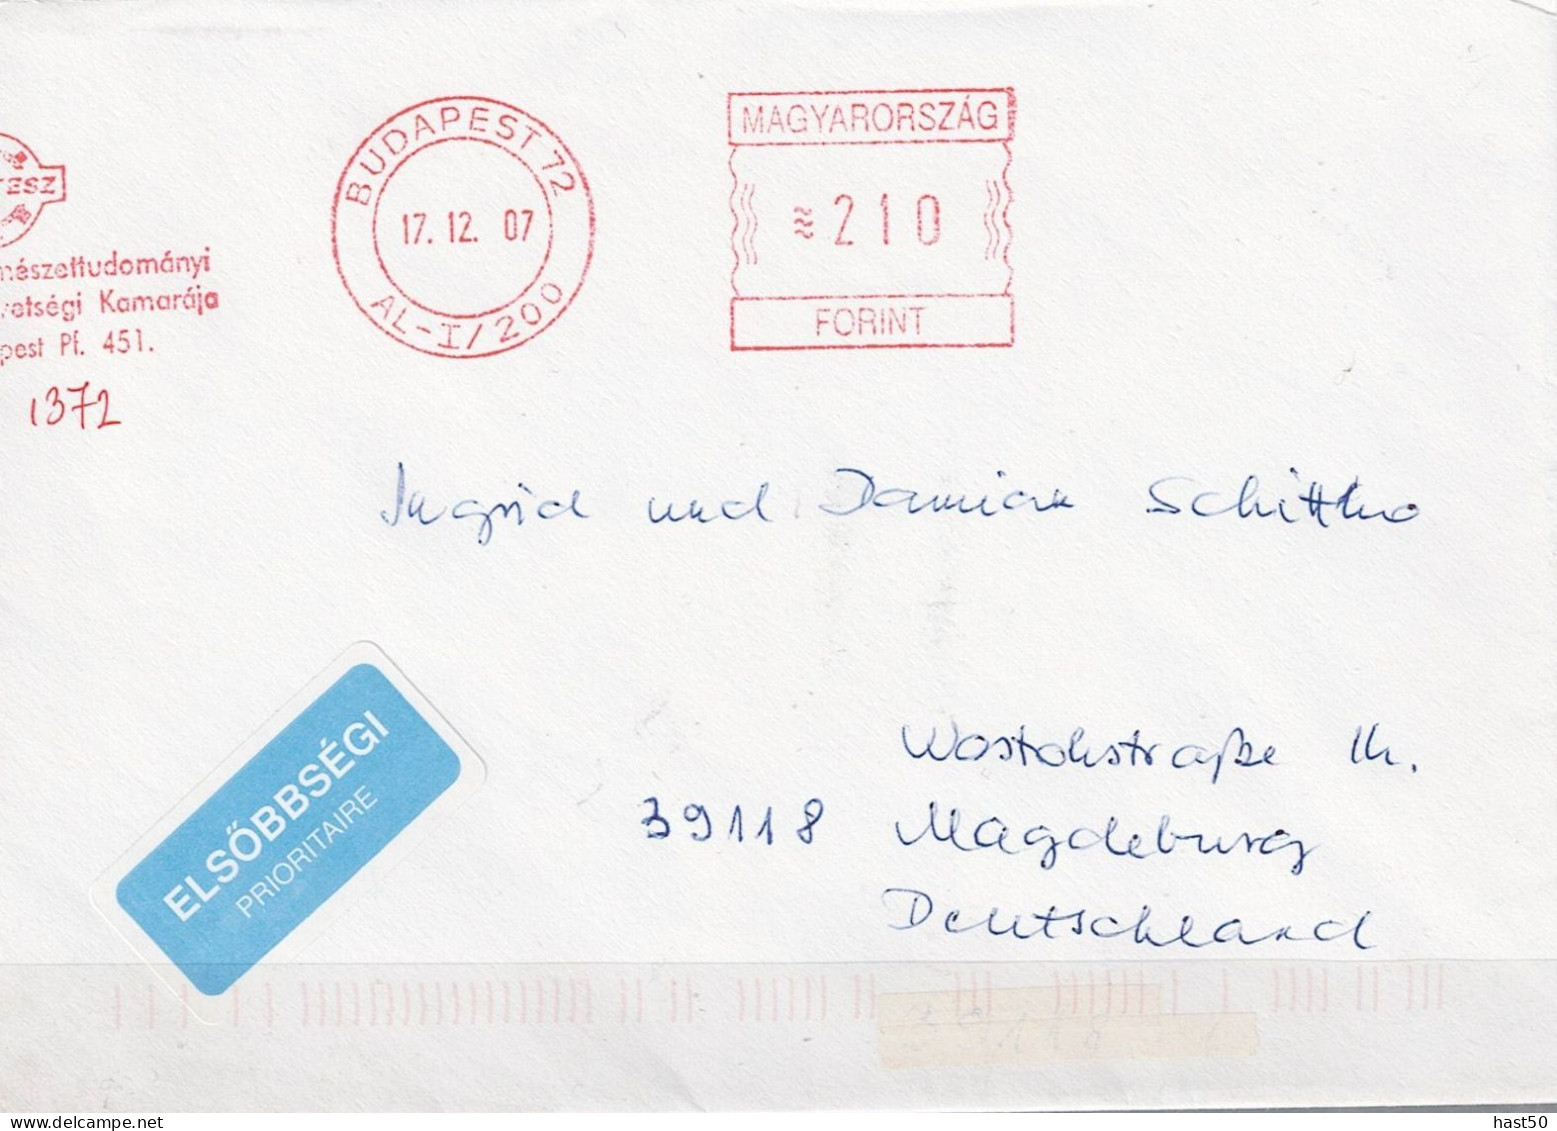 Ungarn Hungary Hongrie - Brief Mit Maschinenwerbestempel MTESZ Budapest Vom 17.12.07 Nach Magdeburg - Postmark Collection